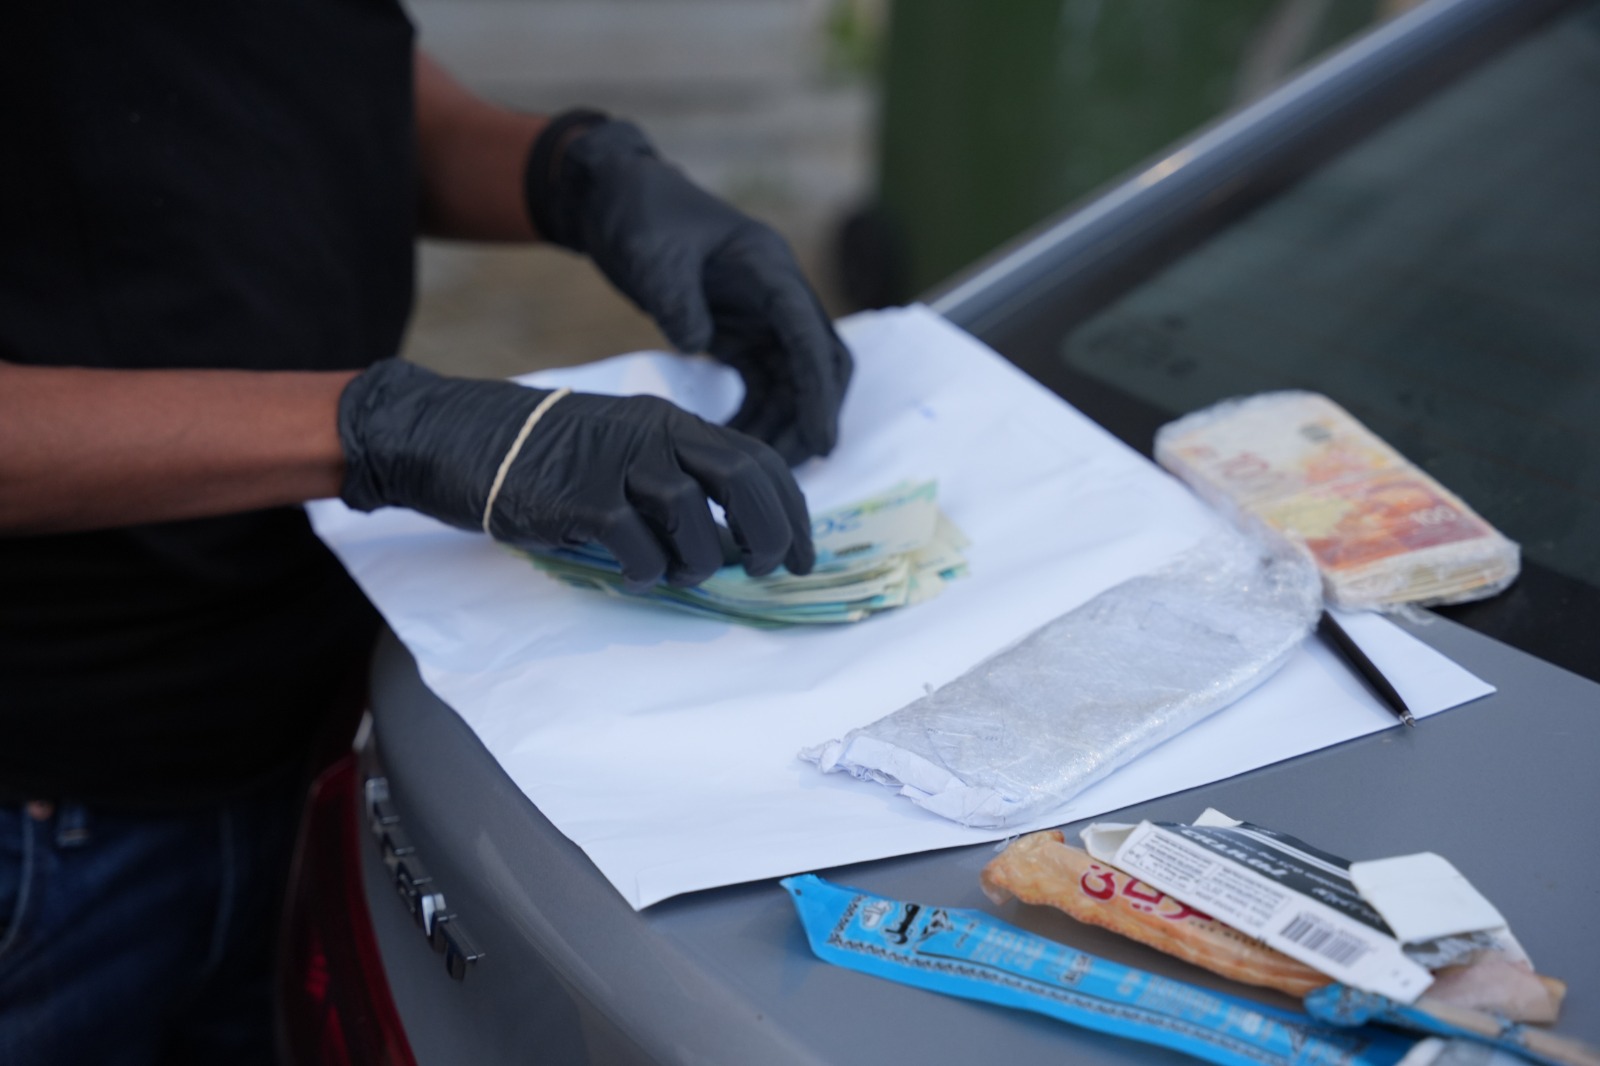 عميل سري يوقع بعشرات تجار الأسلحة والمخدرات في منطقة وادي عارة والجليل